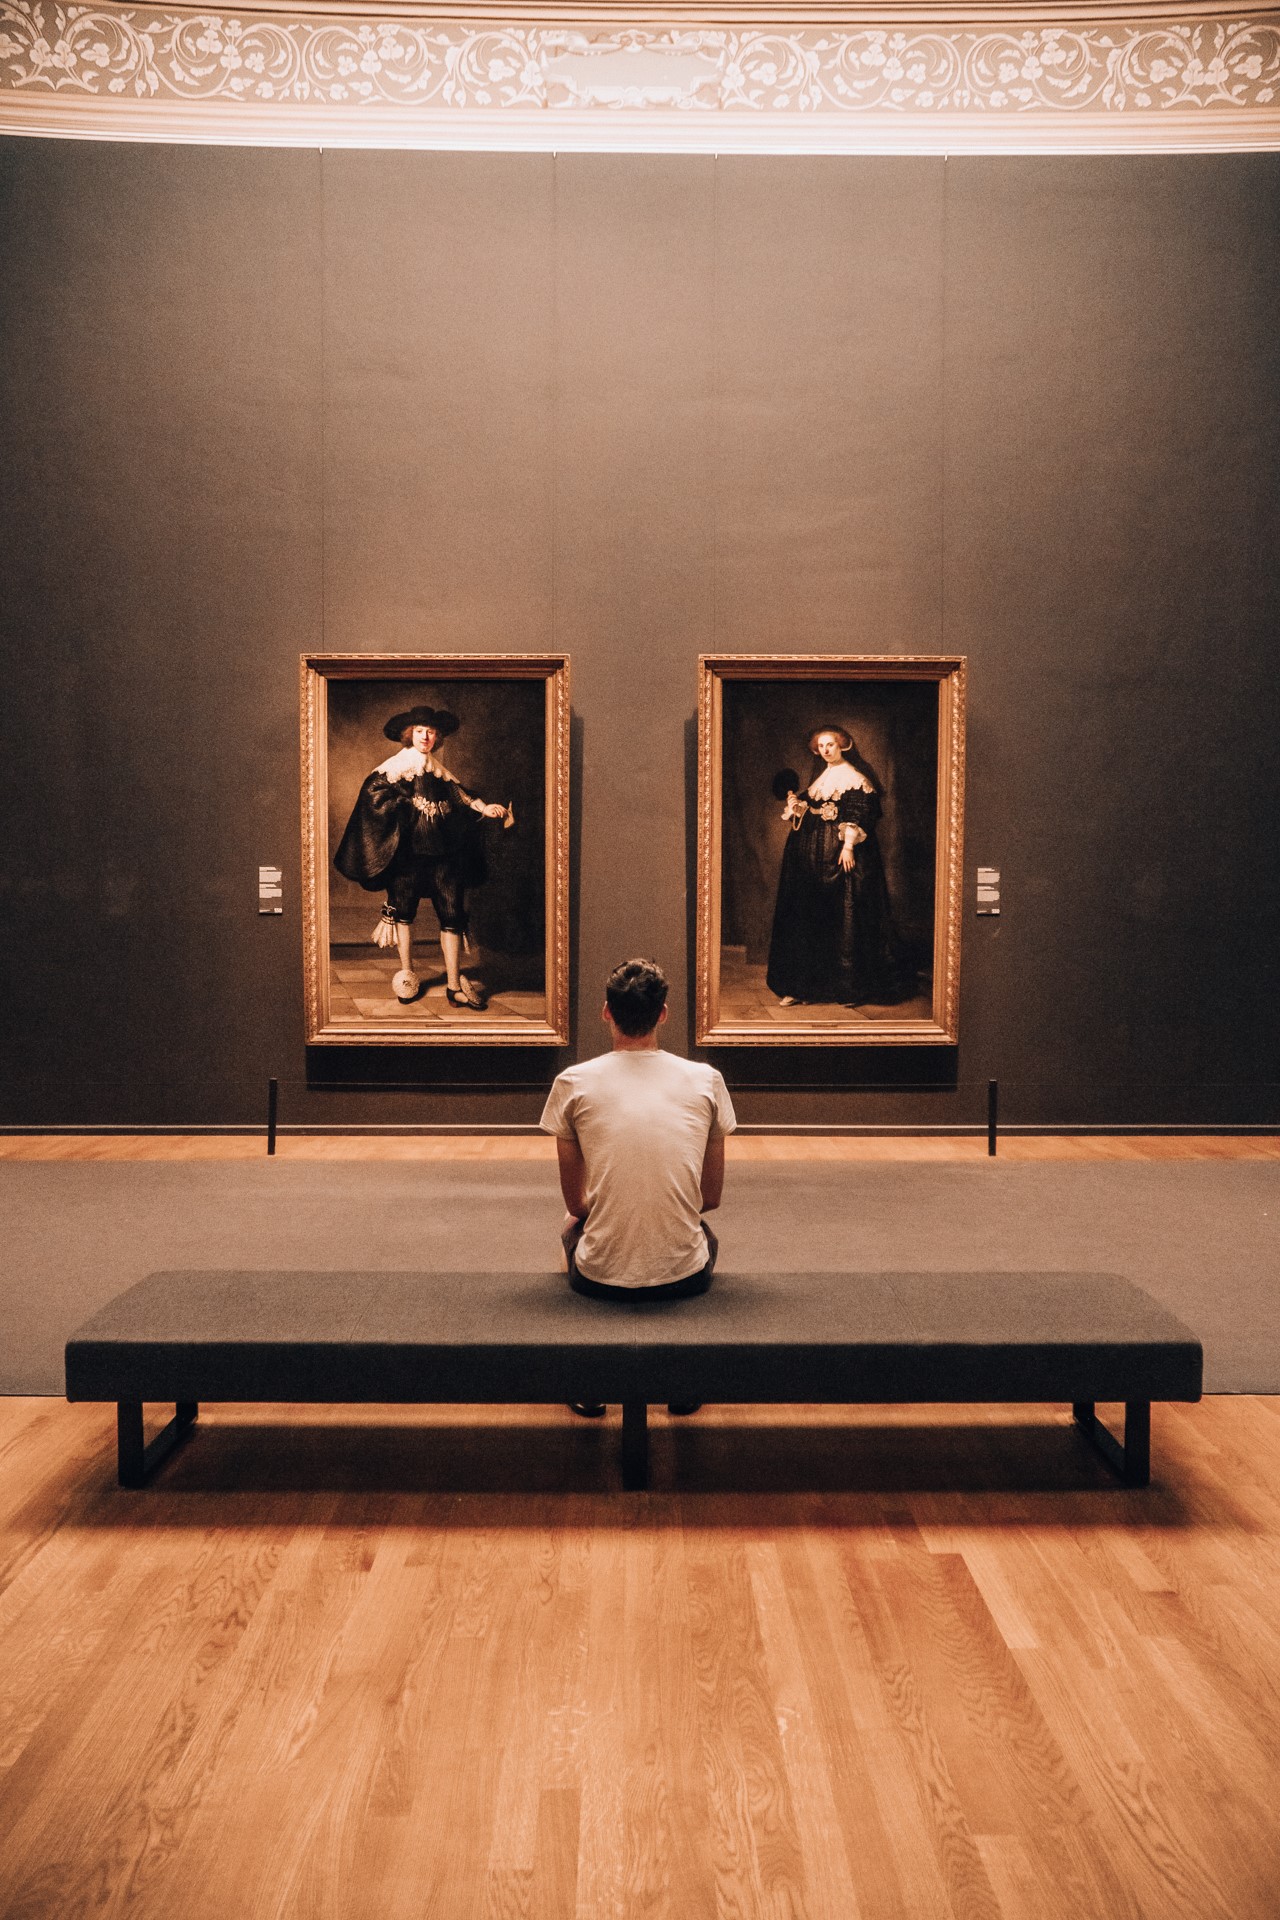 Kolekcja obrazów holenderskich w Rijksmuseum | Co zobaczyć w Amsterdamie?